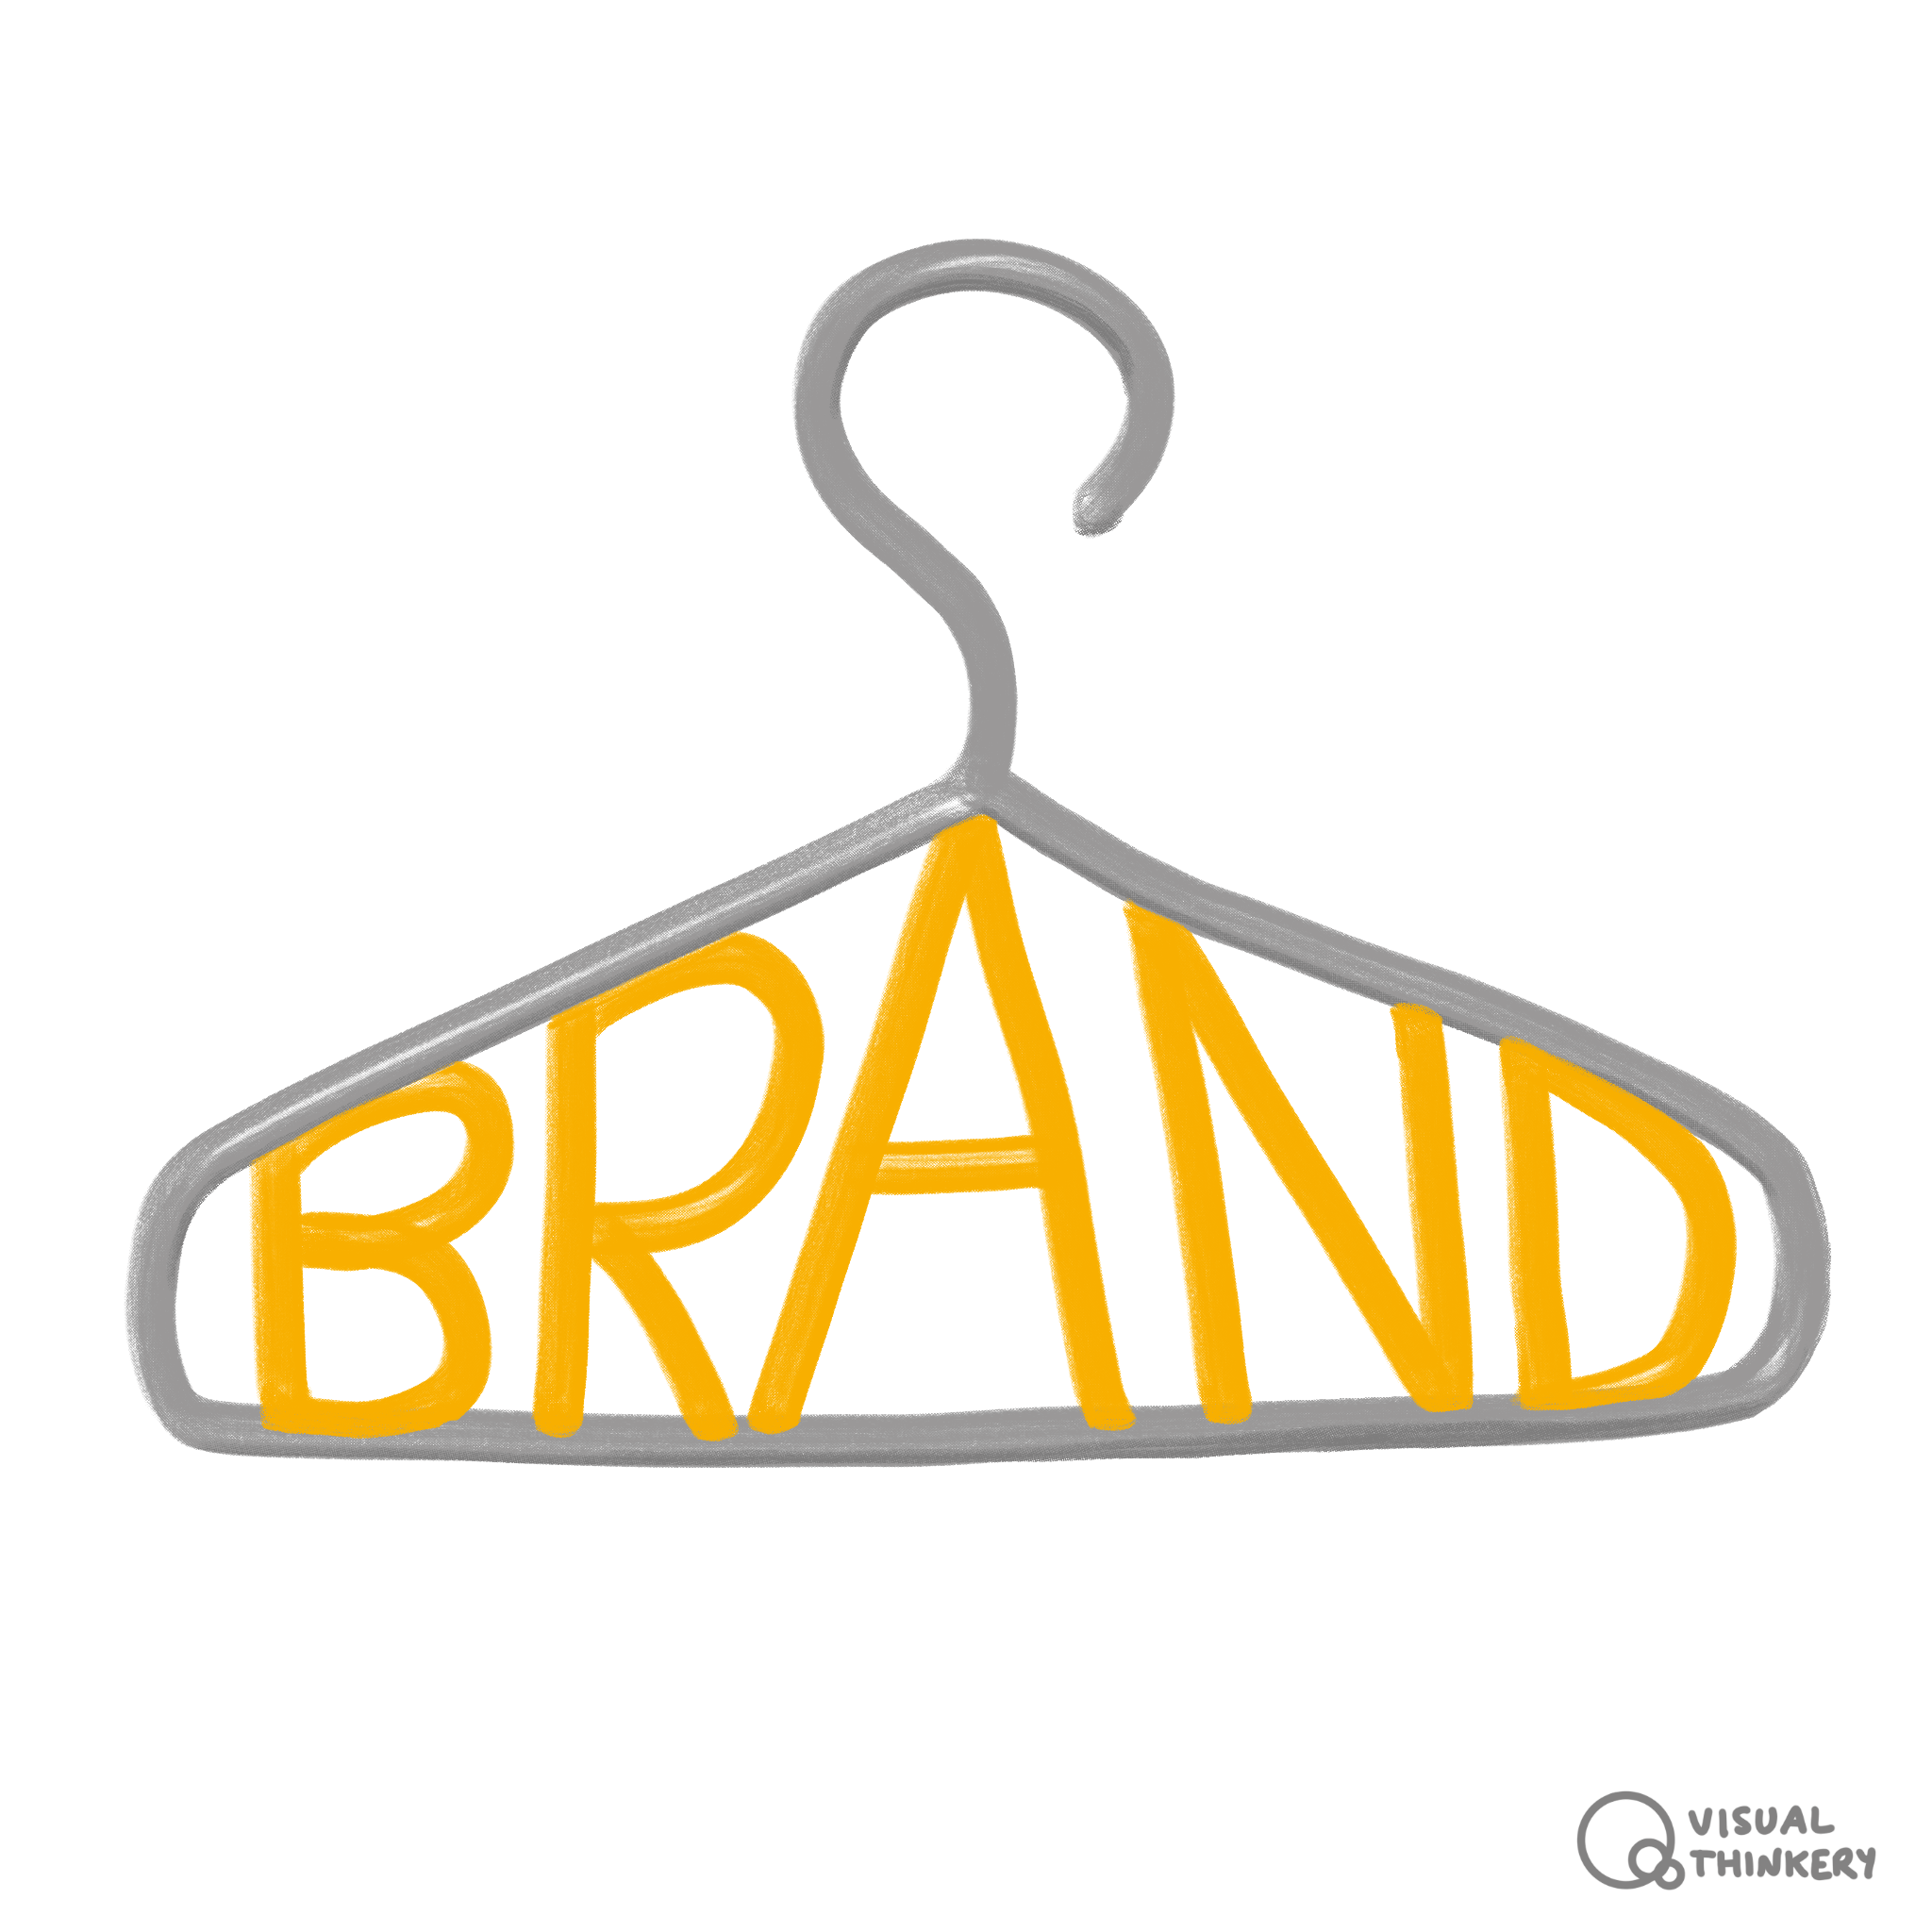 Brand hanger